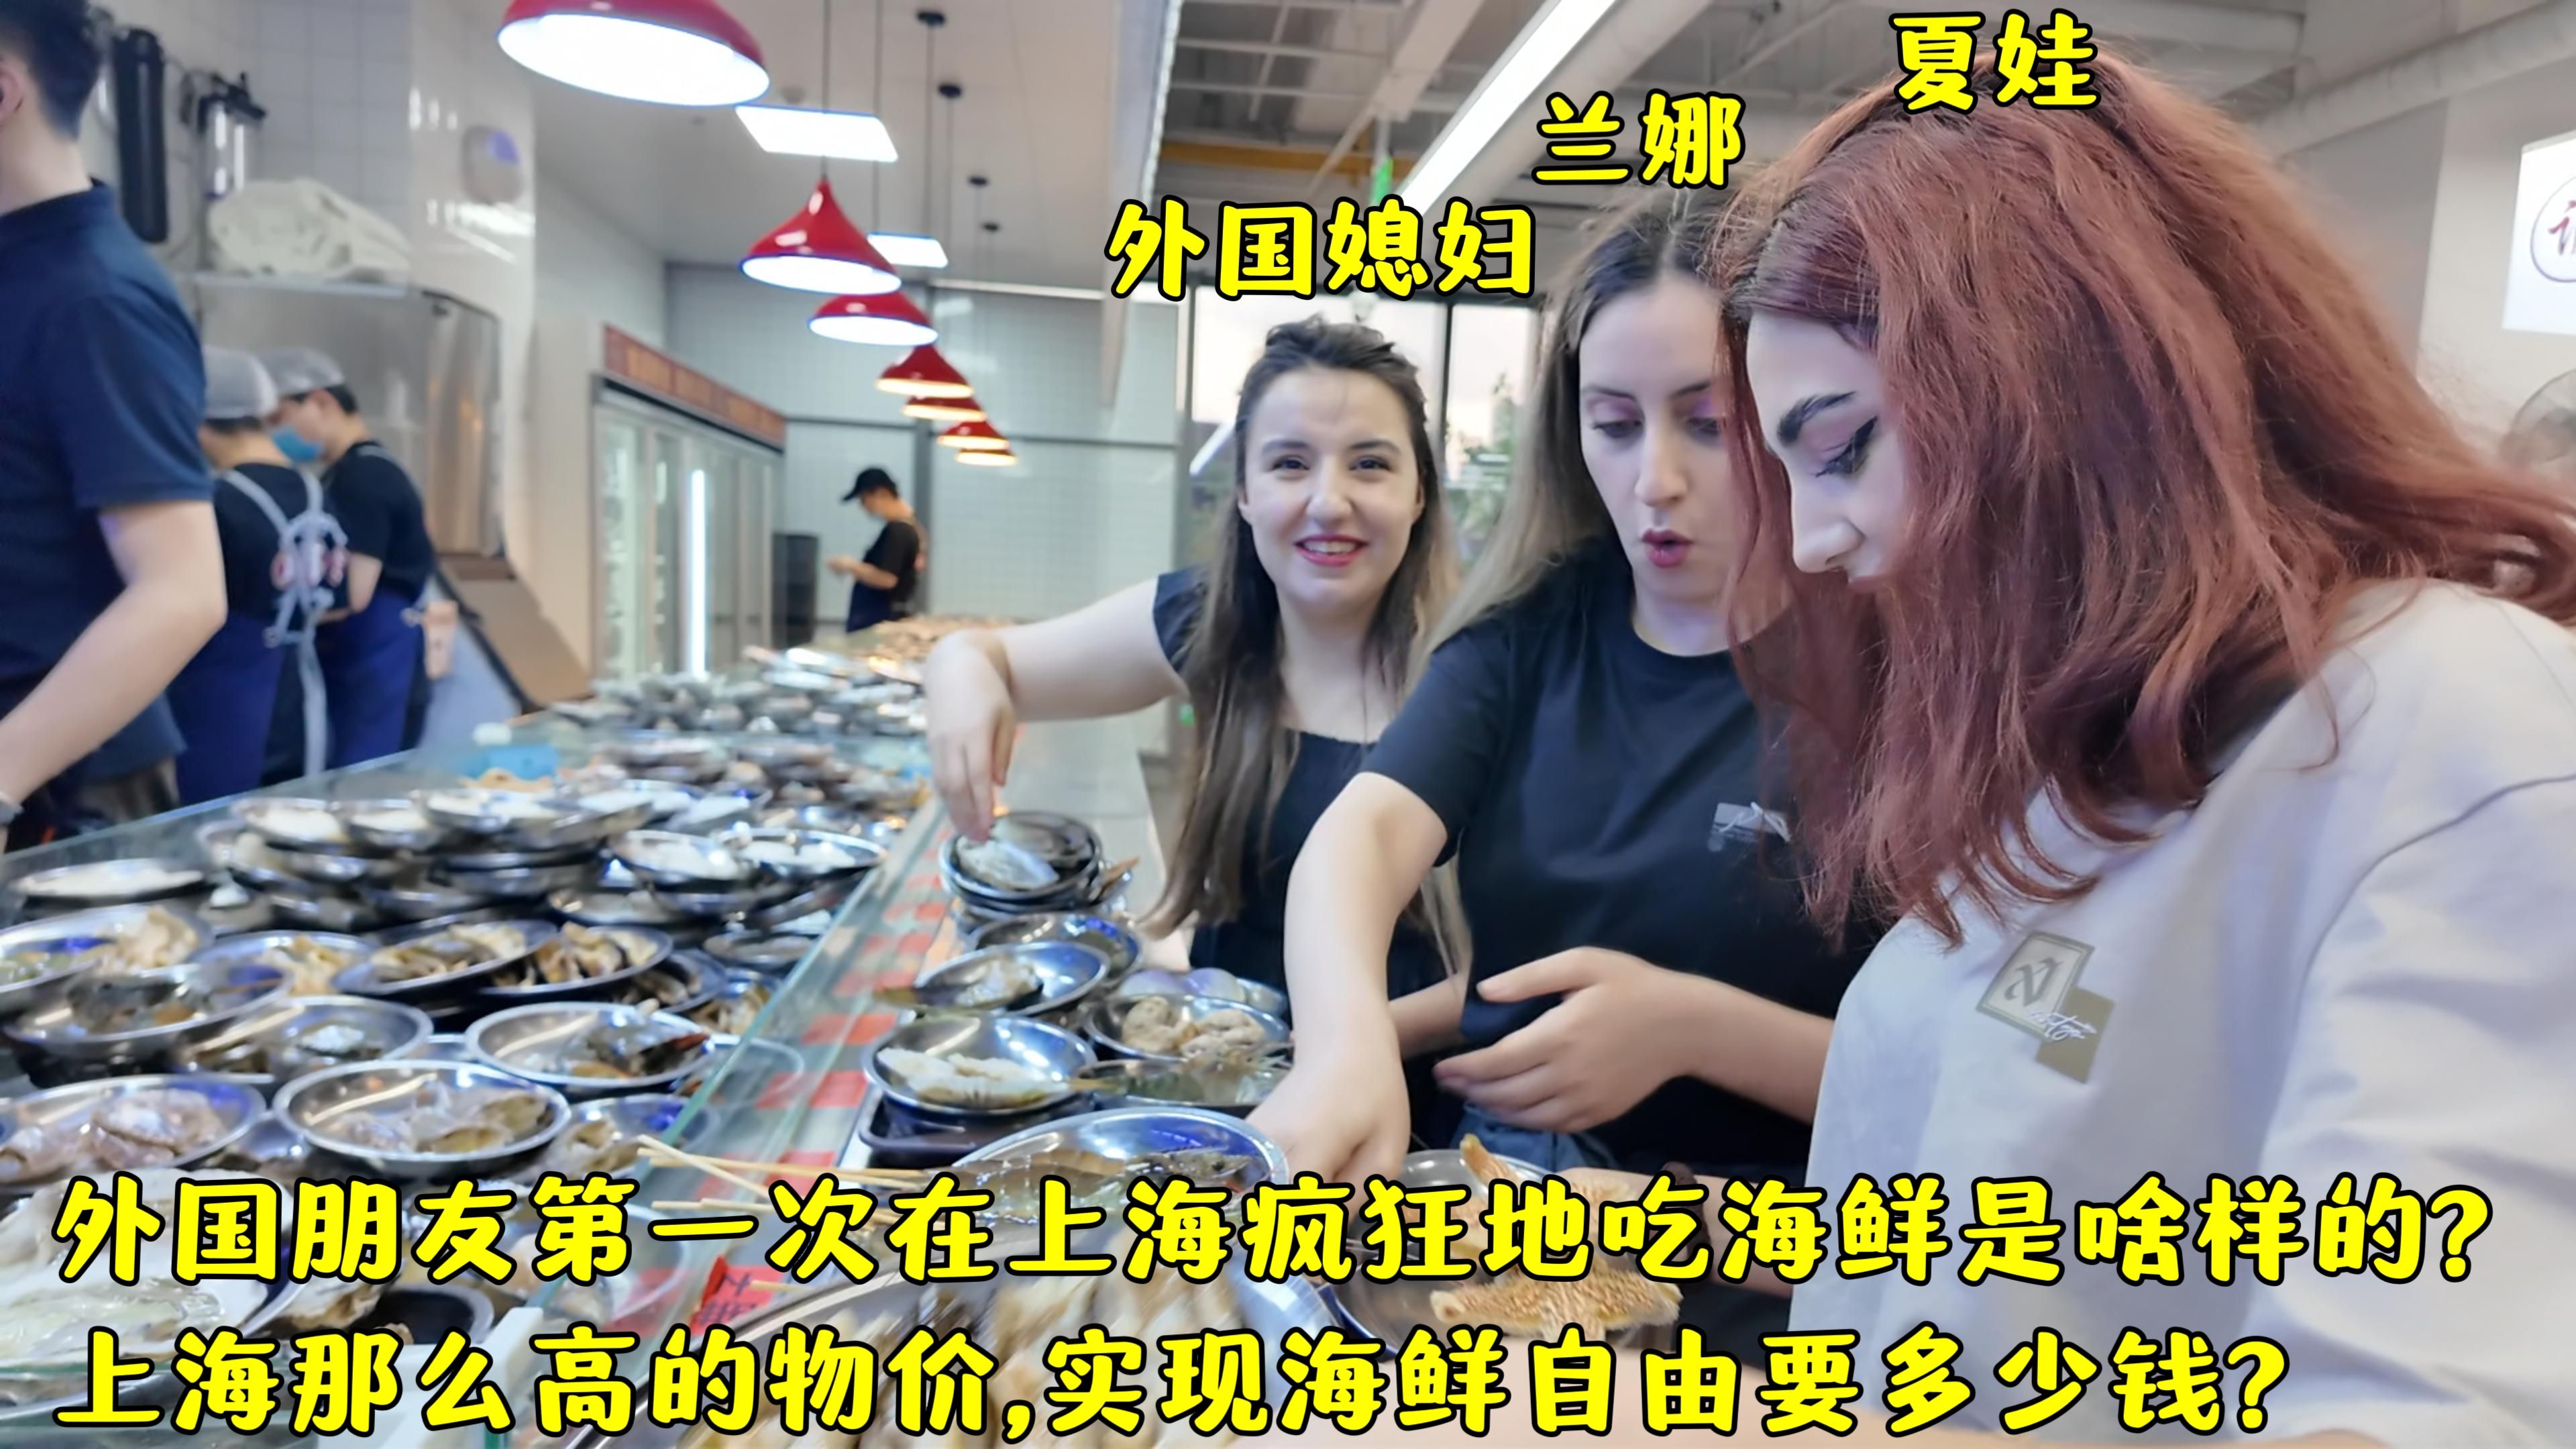 外国朋友在上海吃什么海鲜?上海物价那么贵,吃这么多海鲜多少钱?